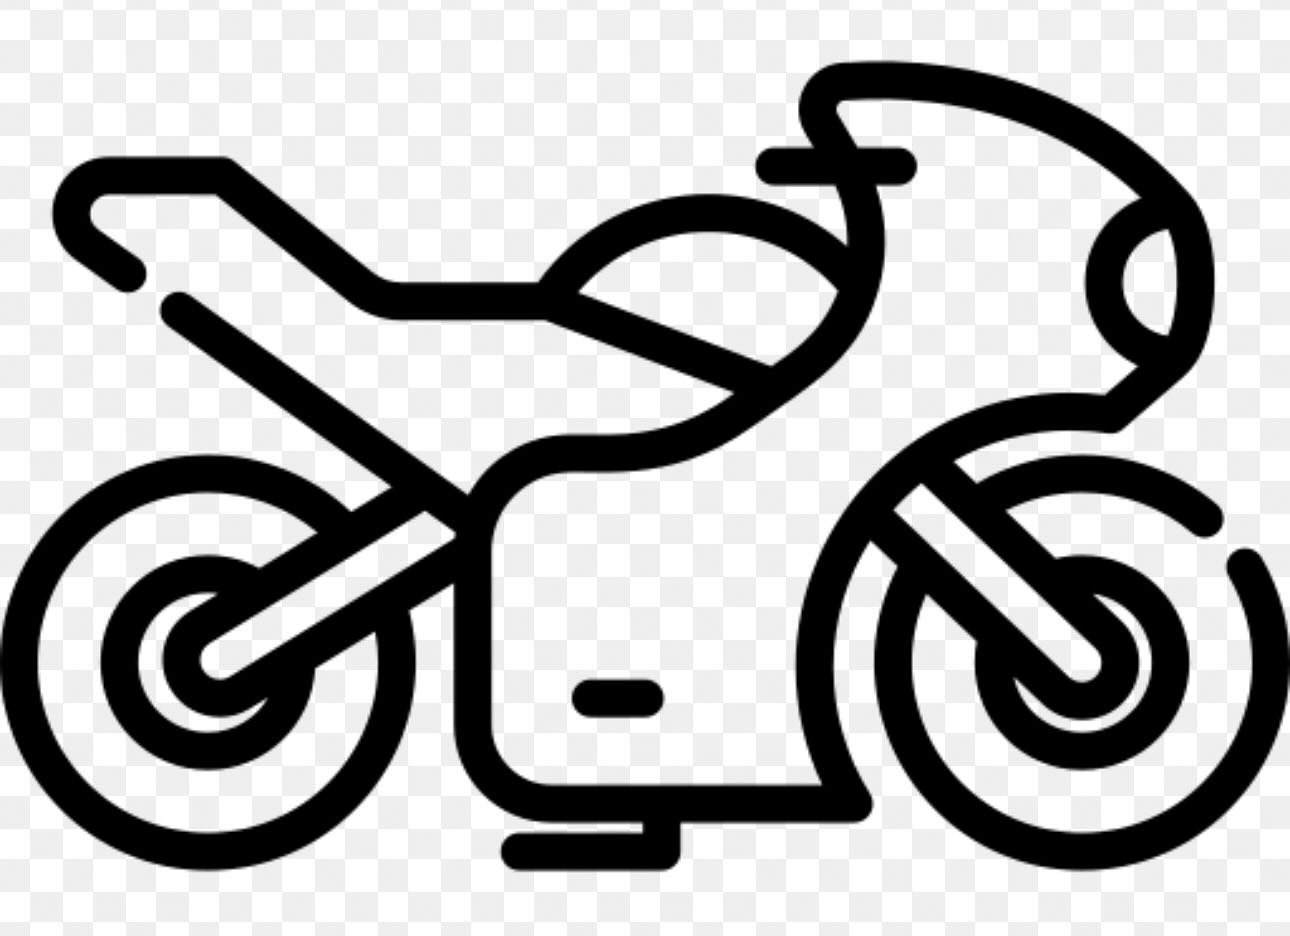 Get on the motorcycle. 3 lessen voor &euro;120,- 
Voor meer info en voorwaarden mail naar info@waardenburg.com. #motorrijlessen #motorrijbewijs #rijbewijs #AVB #AVD #Drechtsteden #Dordrecht